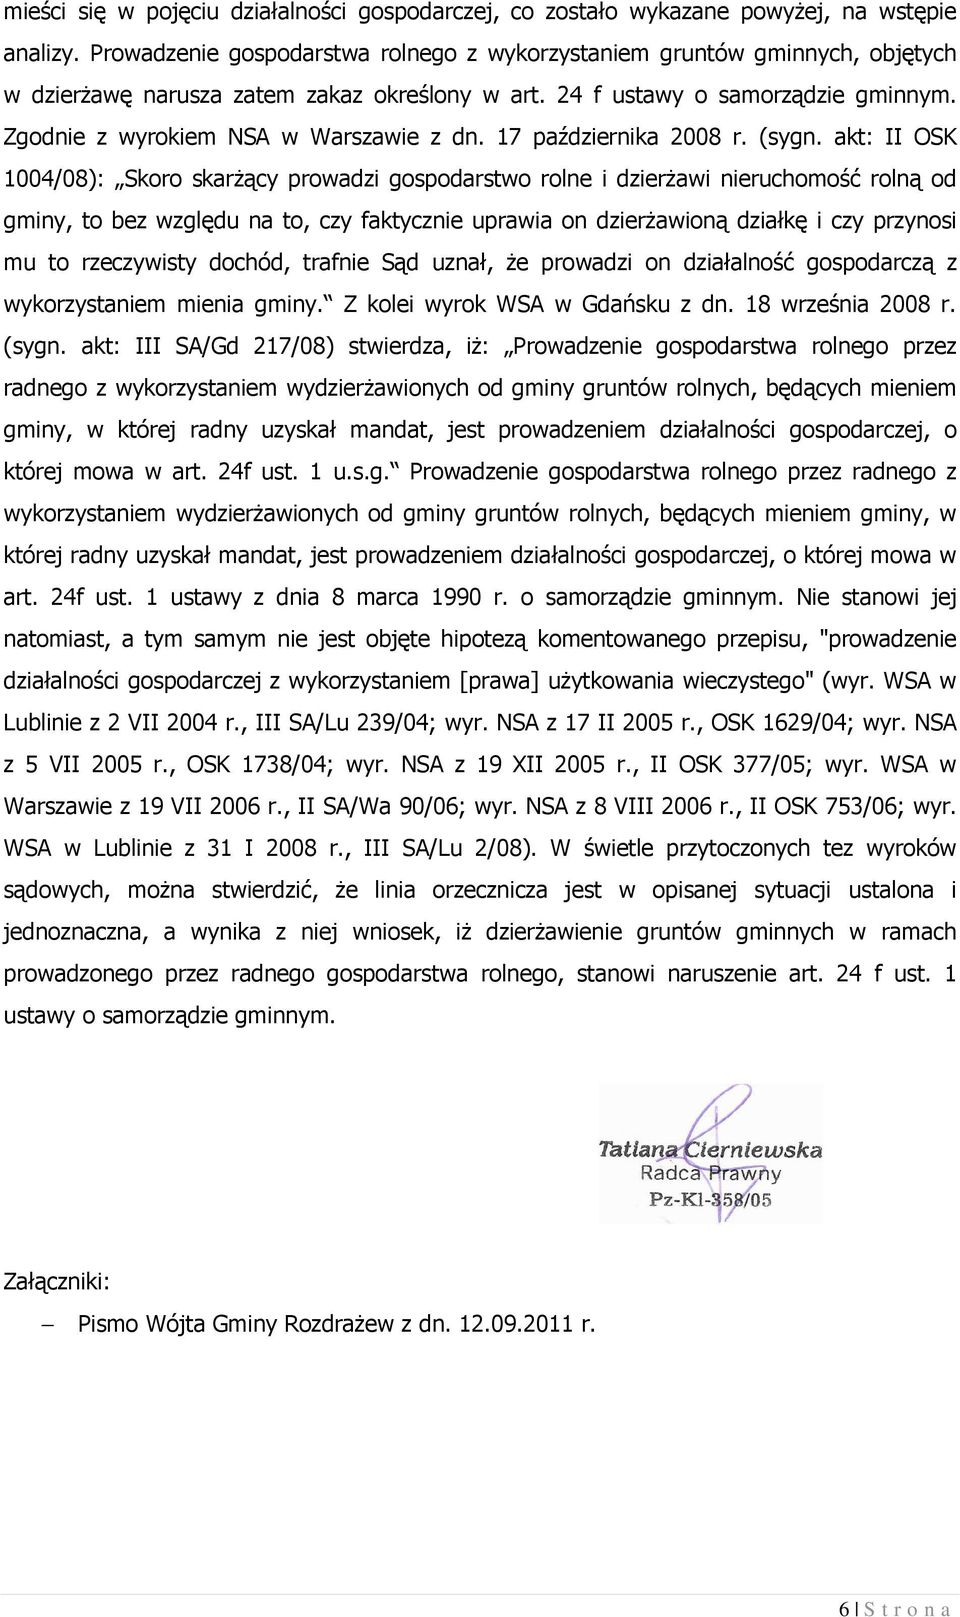 Zgodnie z wyrokiem NSA w Warszawie z dn. 17 października 2008 r. (sygn.